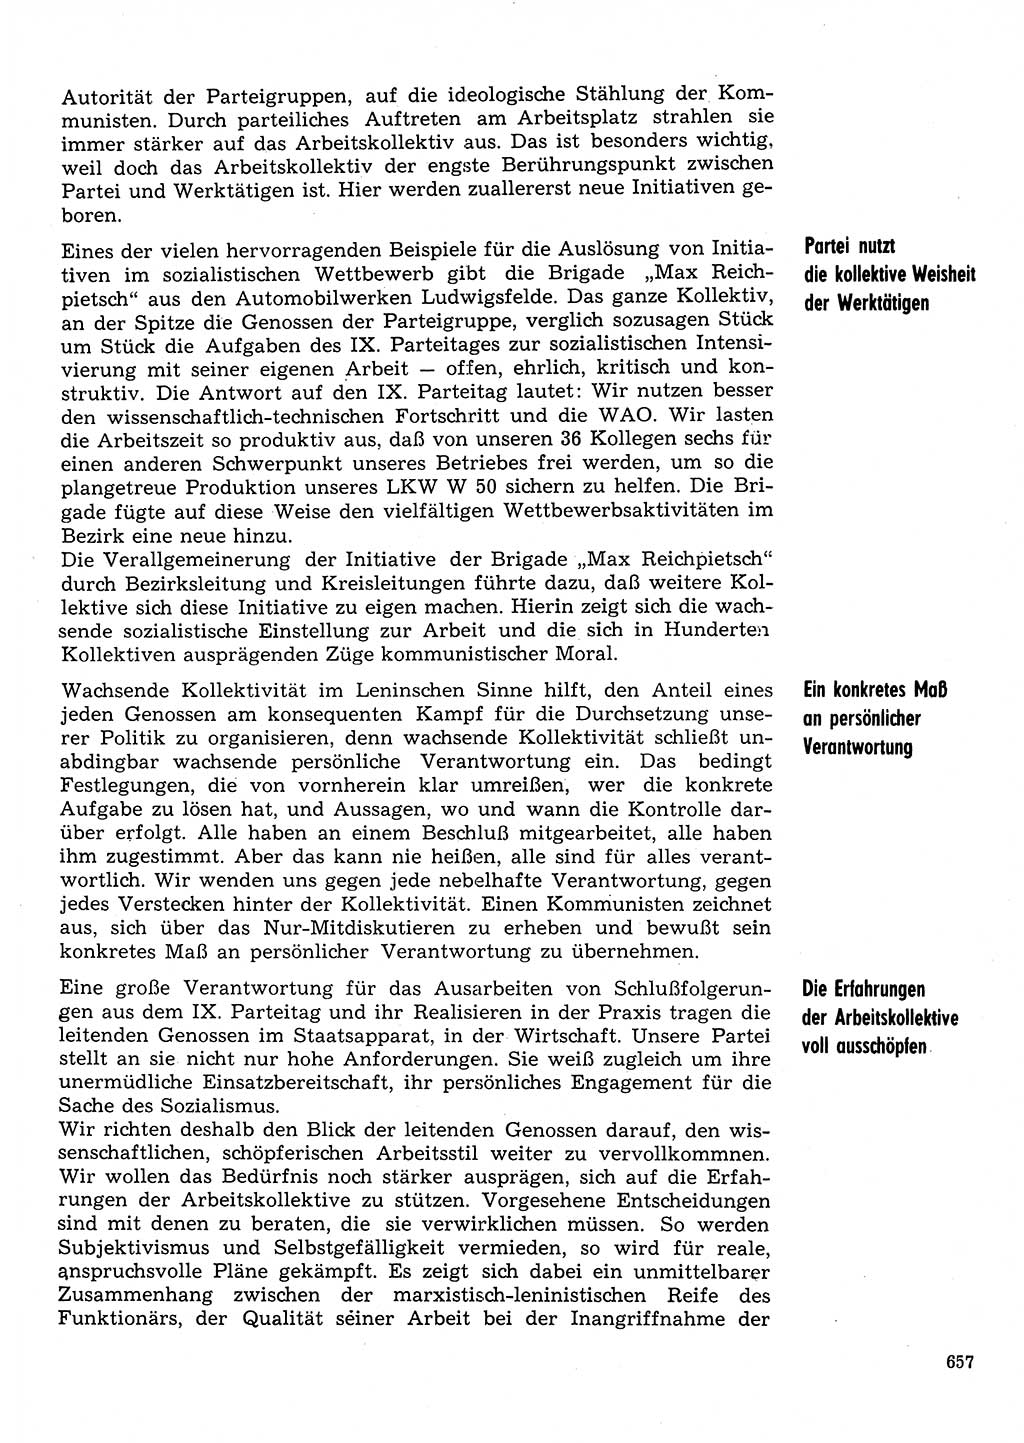 Neuer Weg (NW), Organ des Zentralkomitees (ZK) der SED (Sozialistische Einheitspartei Deutschlands) für Fragen des Parteilebens, 31. Jahrgang [Deutsche Demokratische Republik (DDR)] 1976, Seite 657 (NW ZK SED DDR 1976, S. 657)